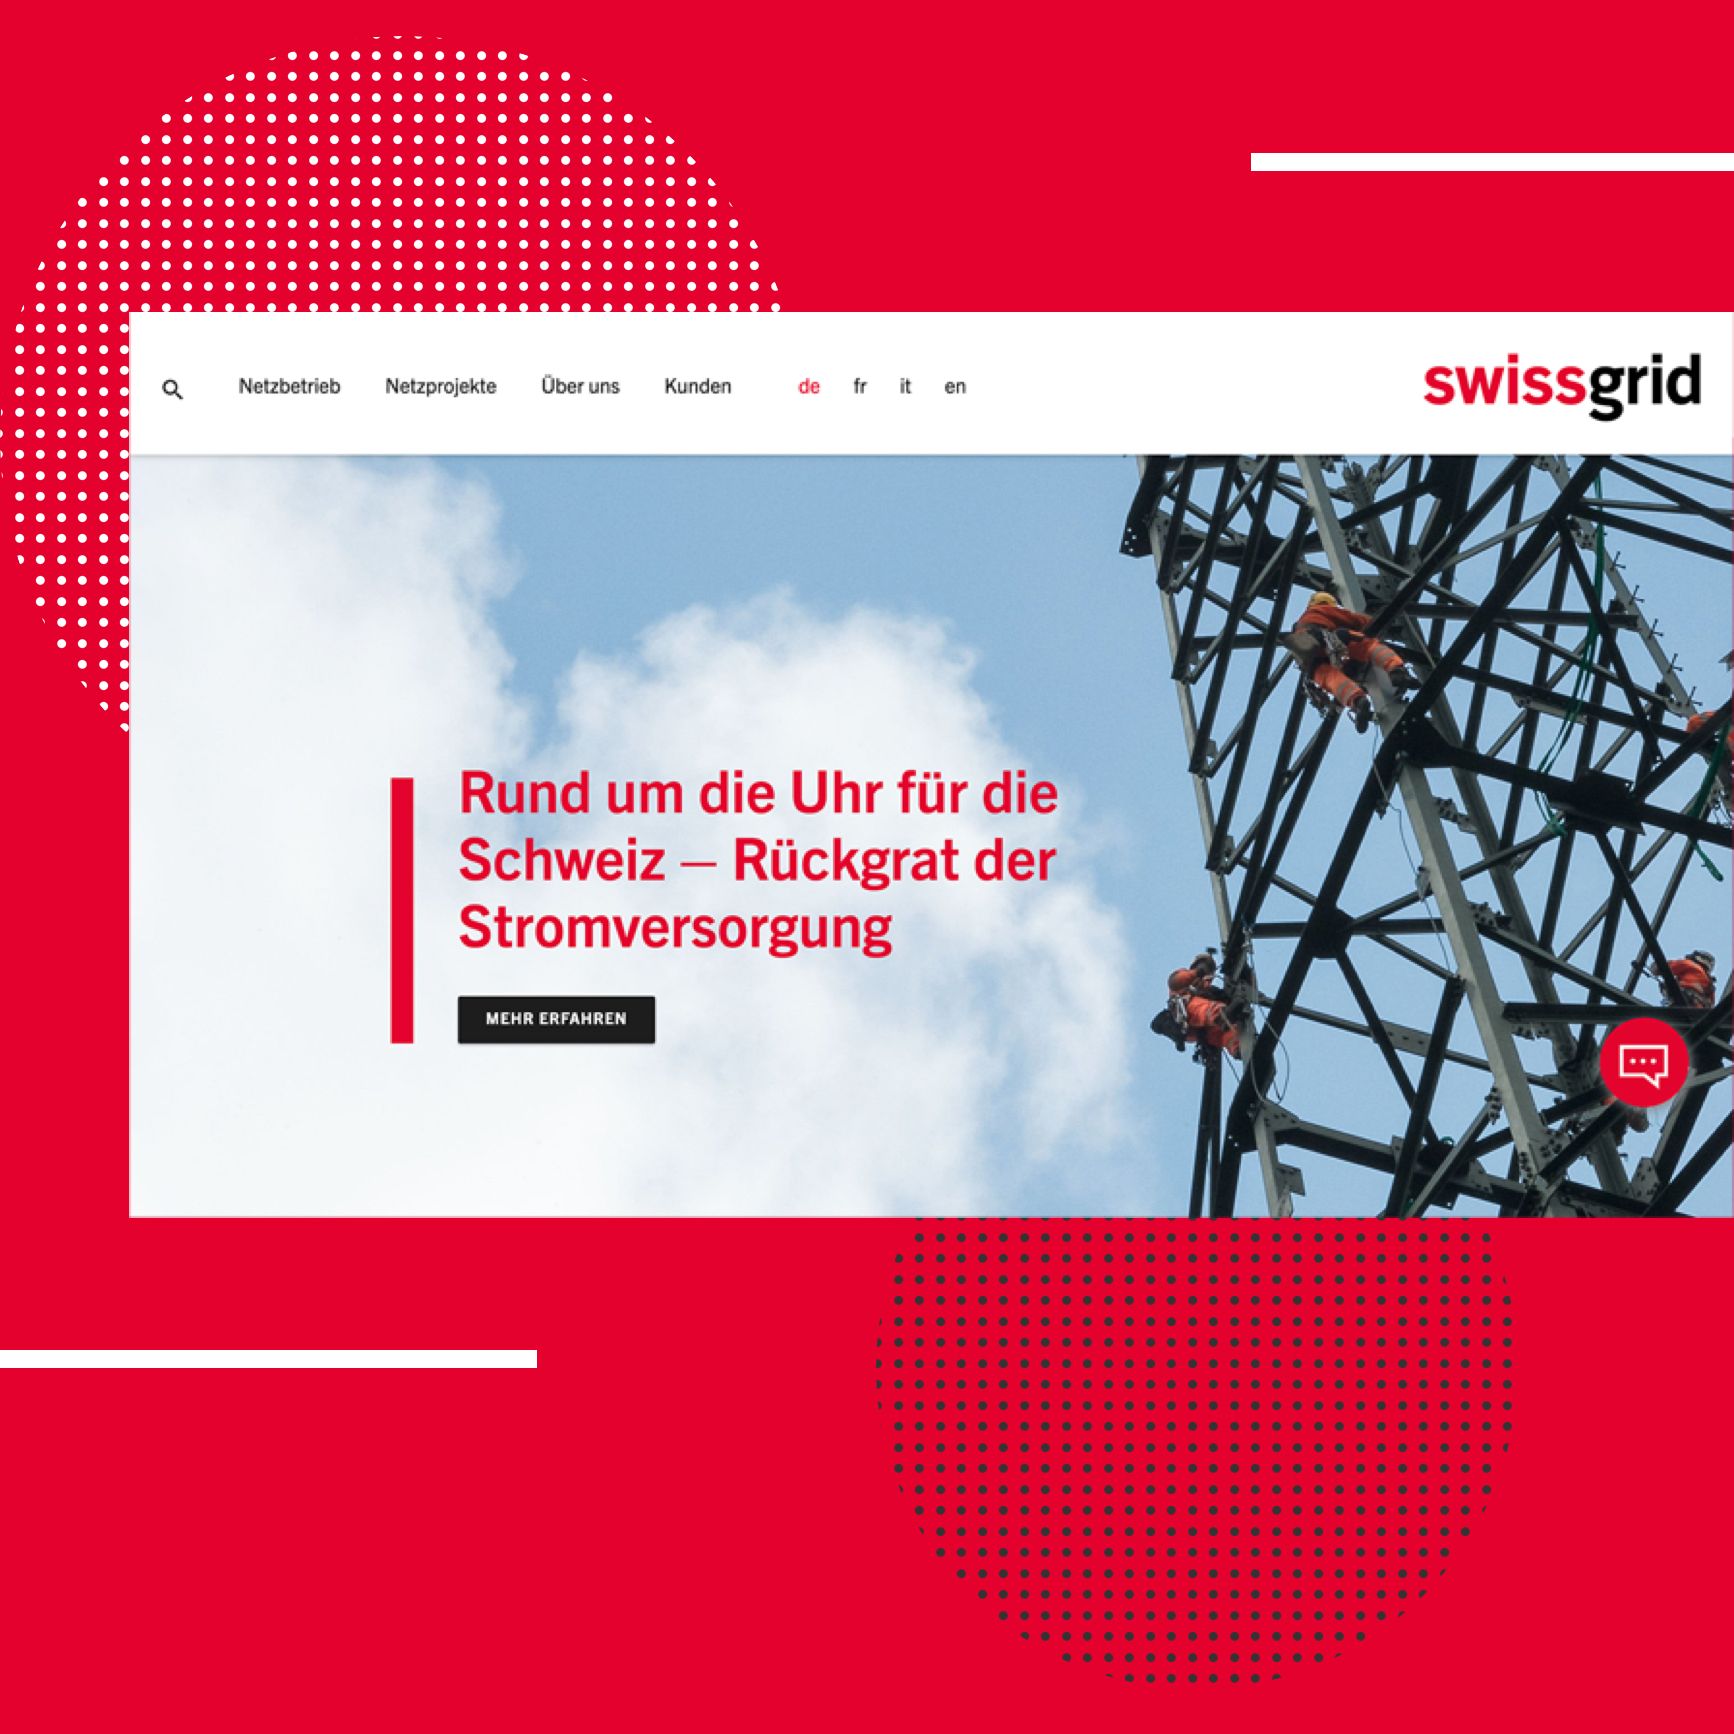 Swissgrid - Stagebild Hochspannungsmast